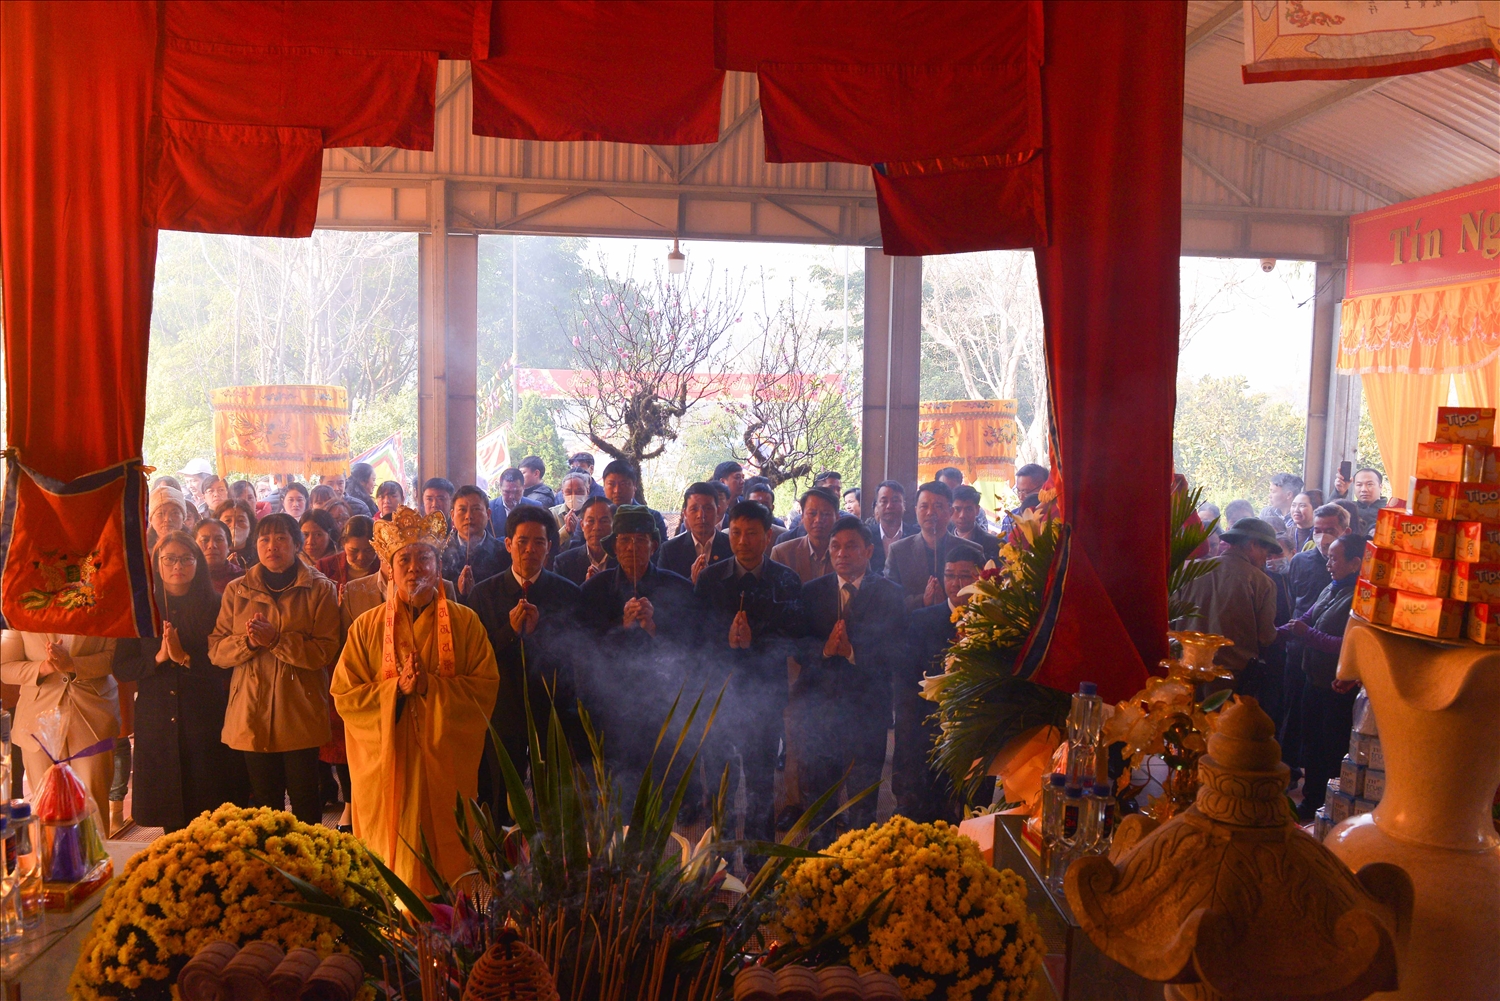 Lãnh đạo Tp. Lai Châu cùng đại diện lãnh đạo các phòng, ban, xã, phường trên địa bàn thành phố và đông đảo Nhân dân dâng hương tại Đền thờ Vua Lê Lợi